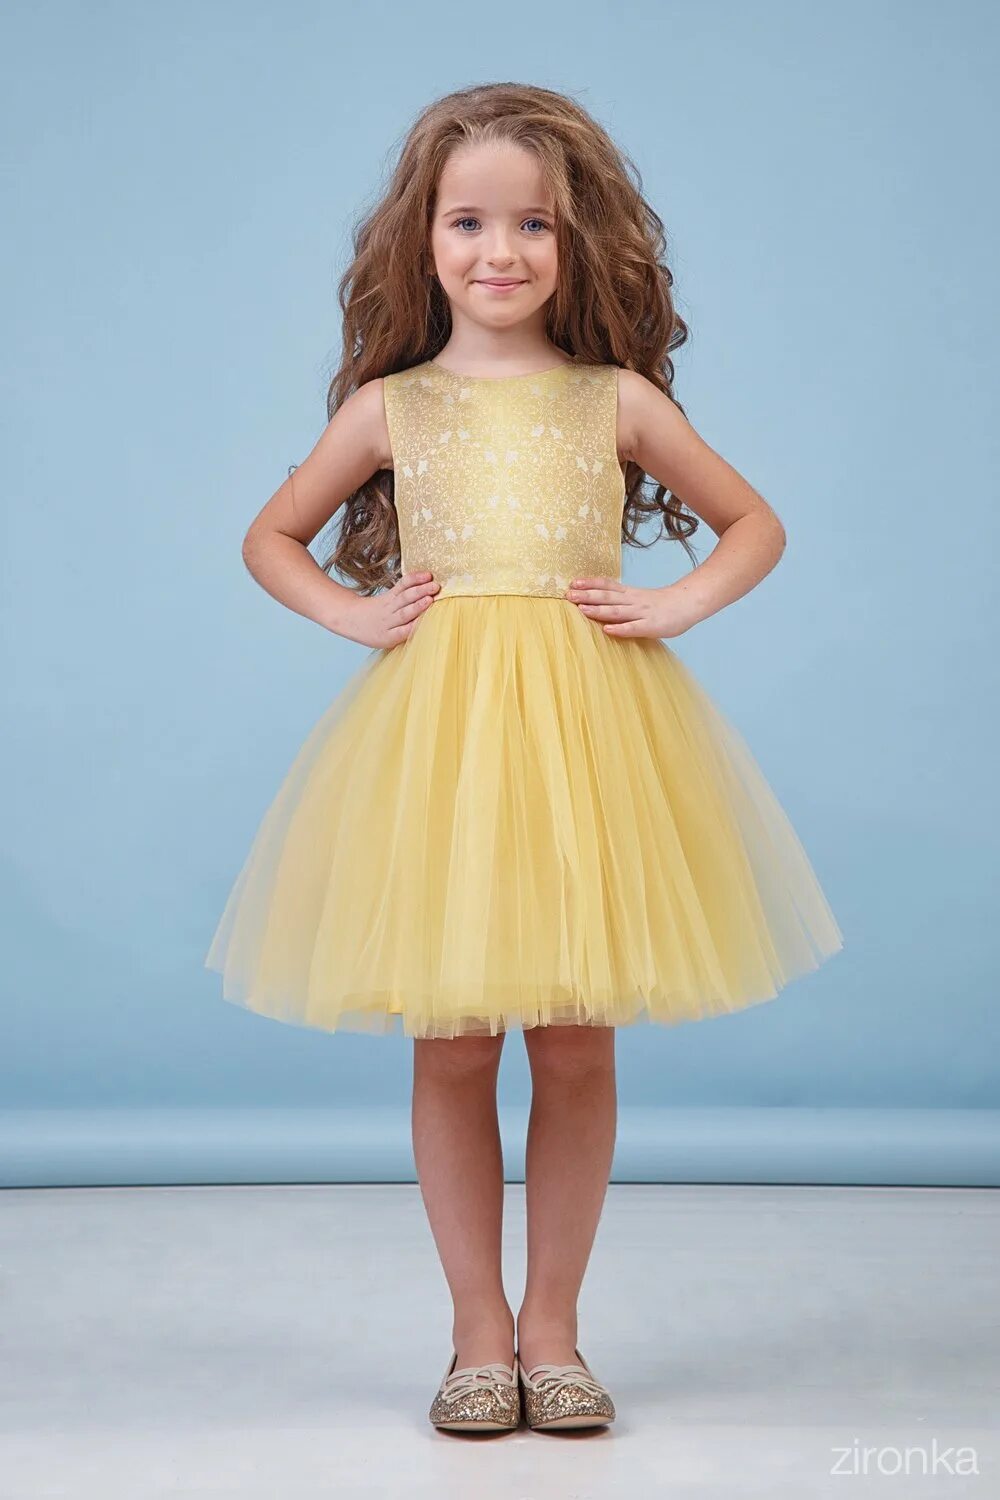 Дети gold. Желтое платье для девочки. Детские платья на выпускной. Золотое платье для девочки. Желтое нарядное платье для девочки.